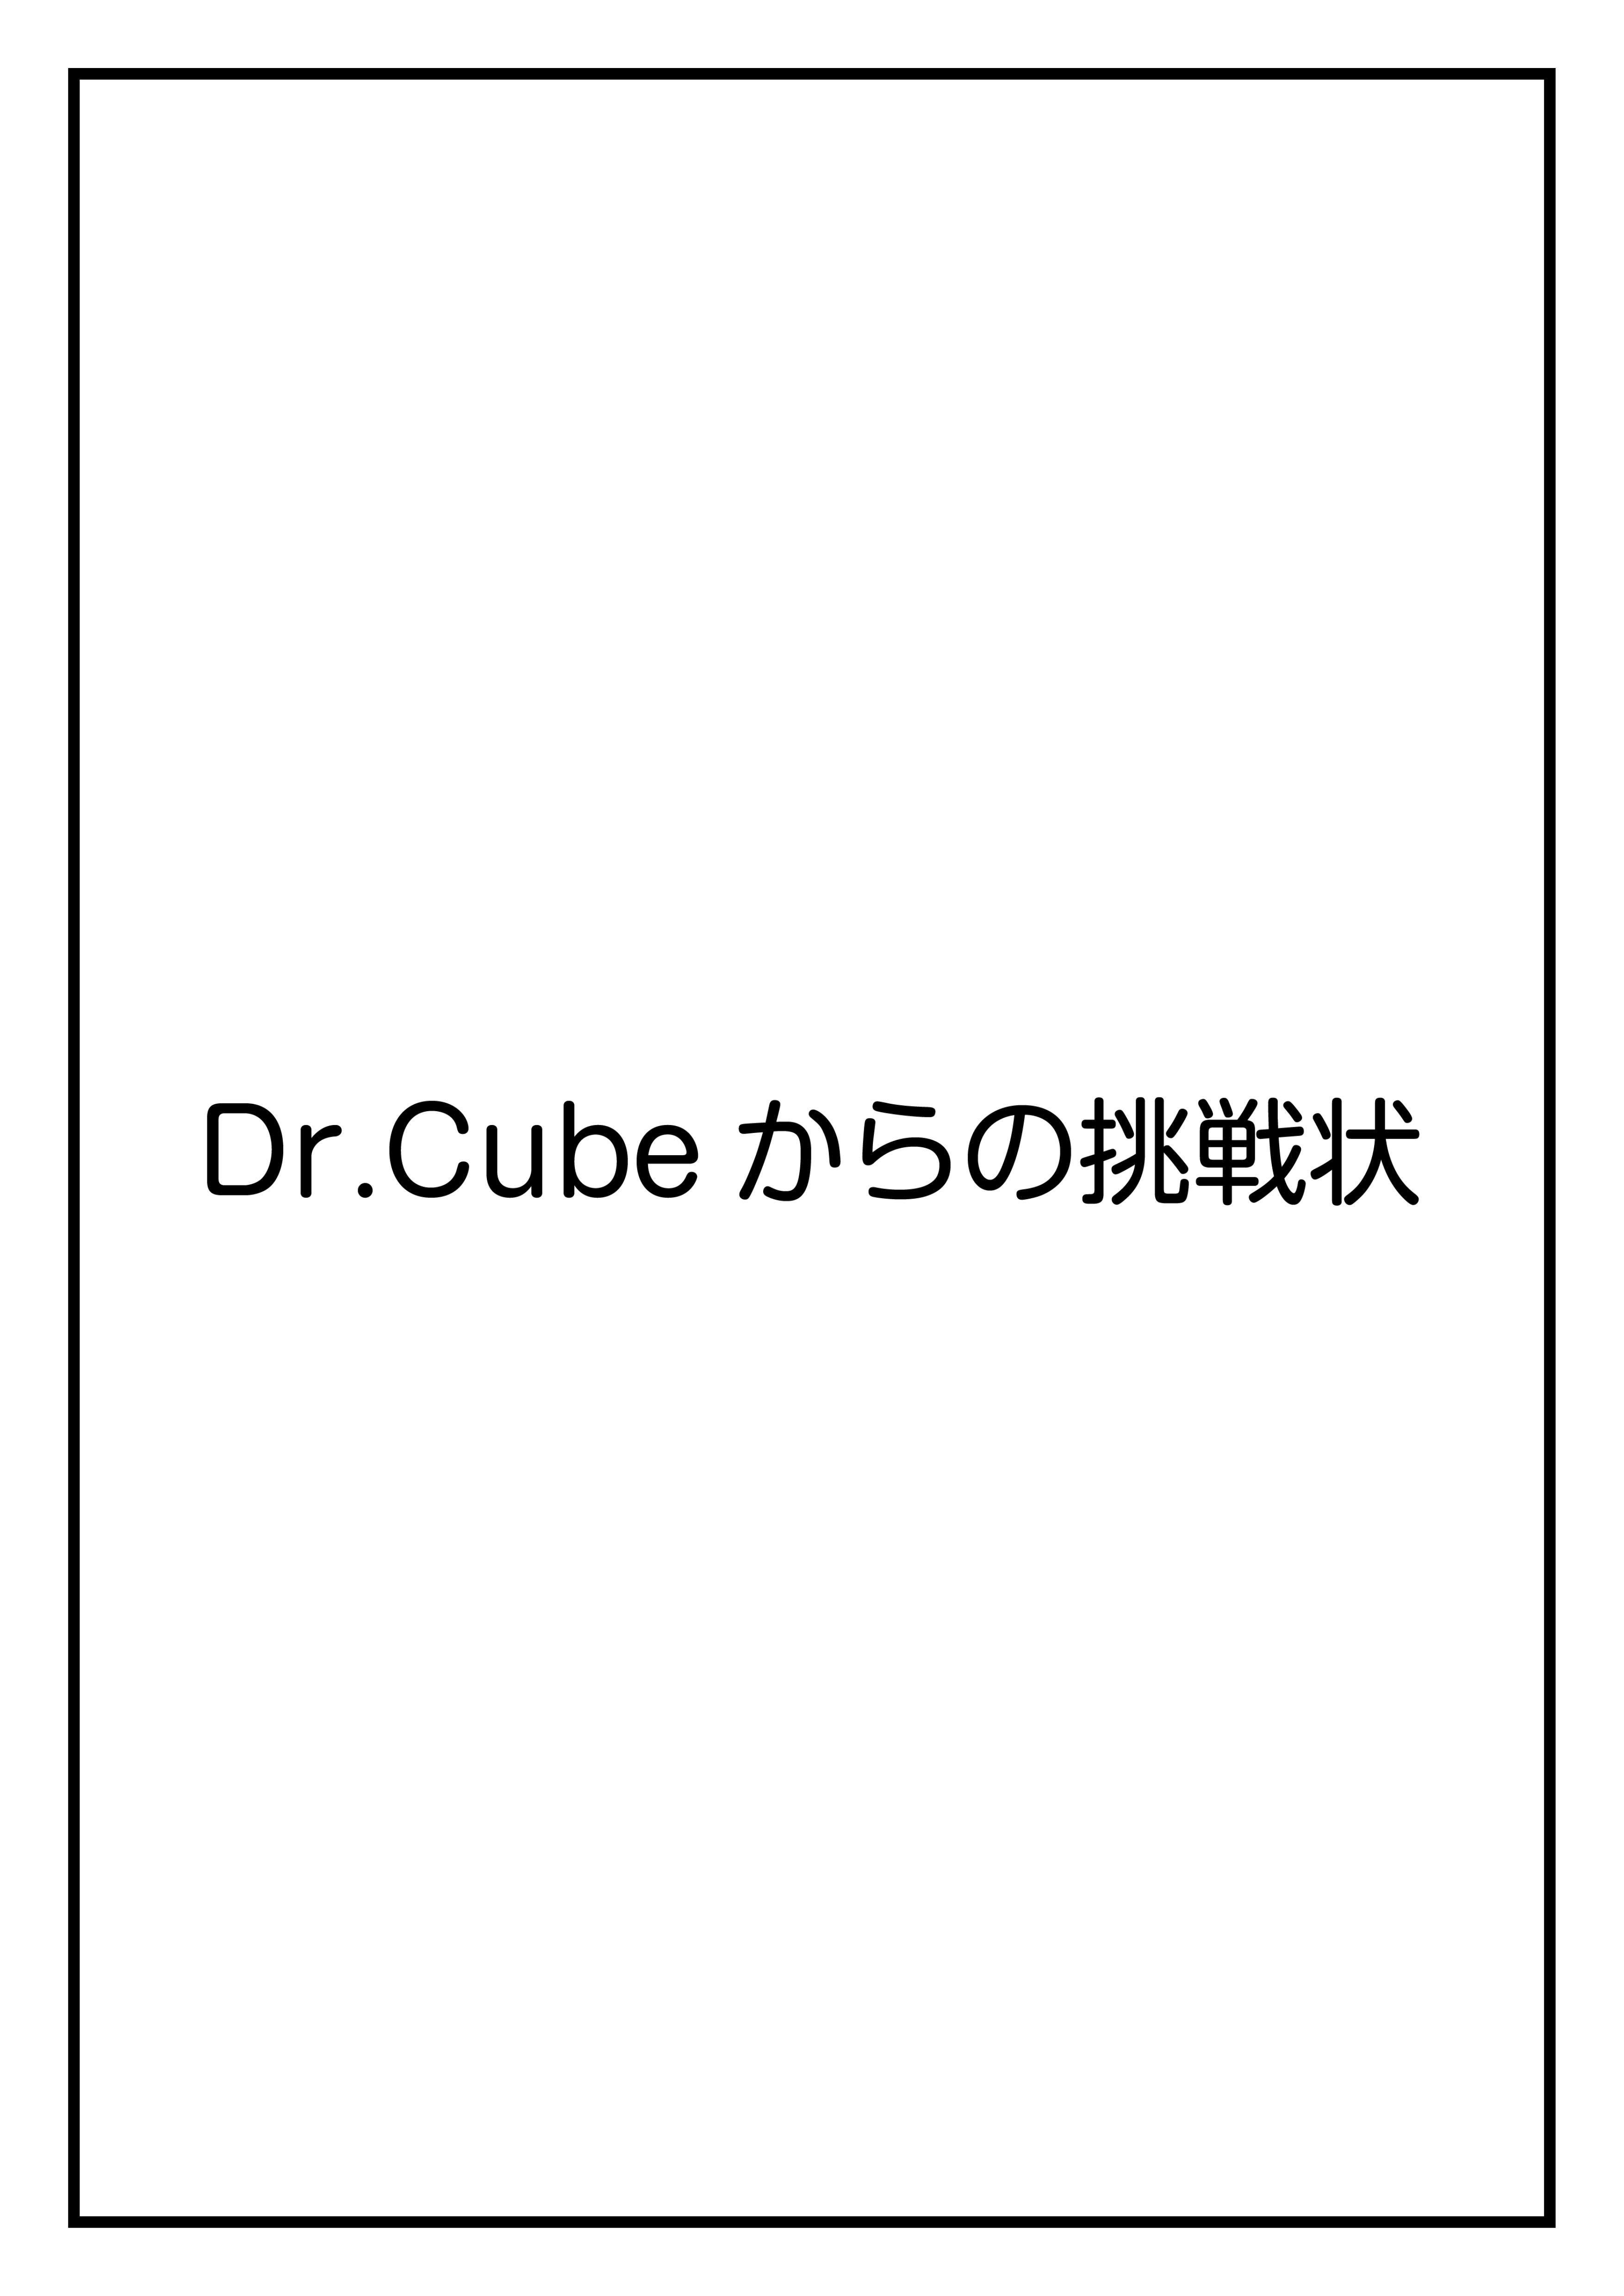 CubeFactory ✕ テクニコテクニカ『Dr.Cubeからの挑戦状シリーズ』体験型謎解きゲーム